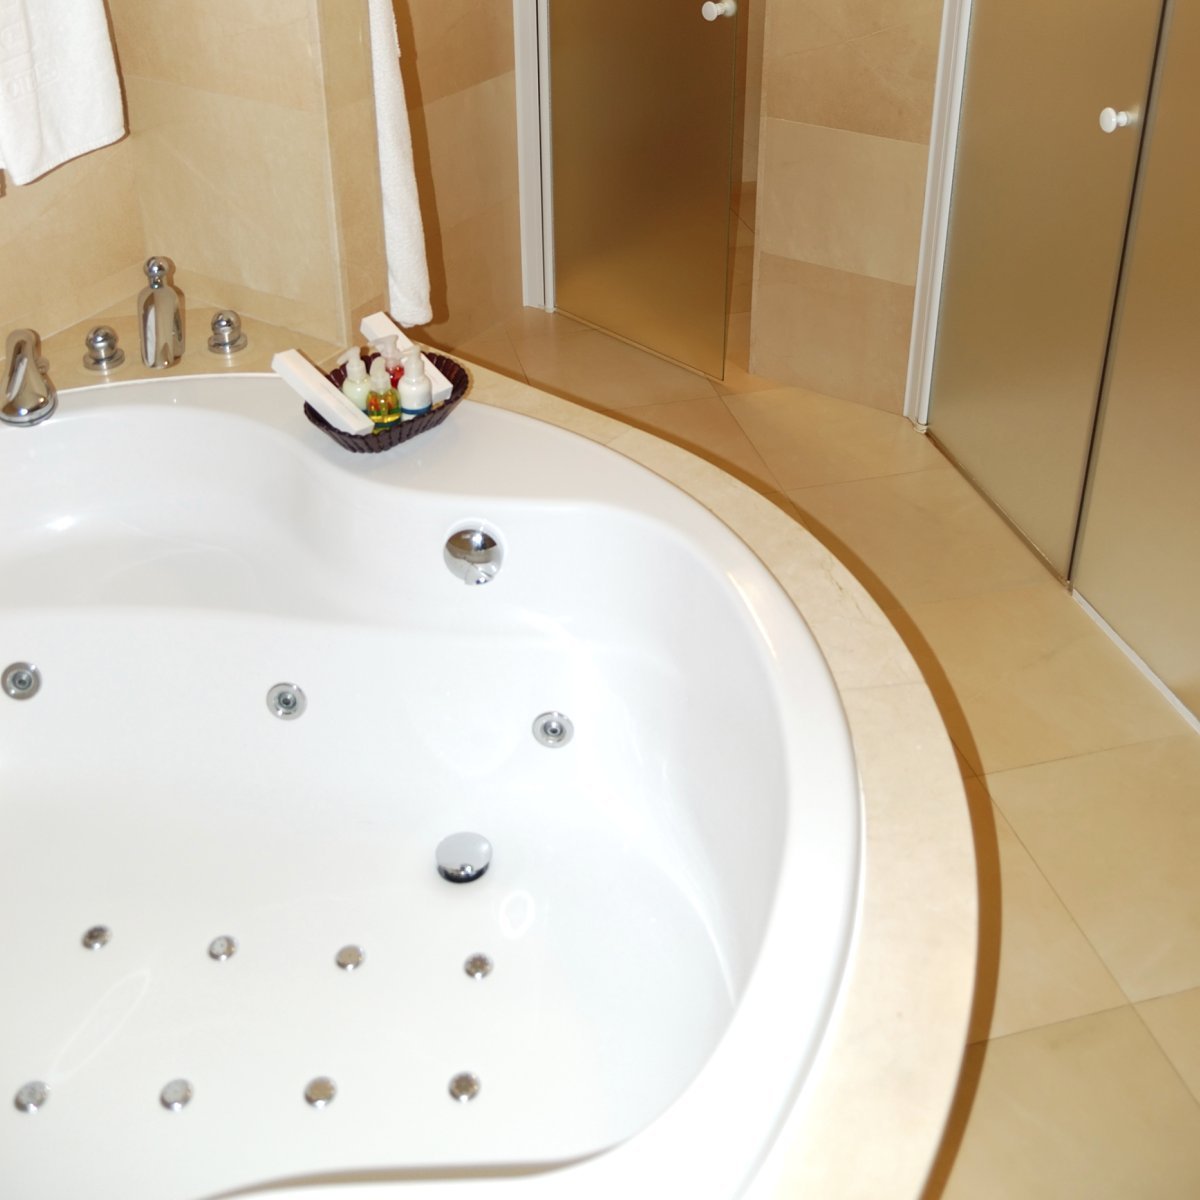 Cleaning Bath Tub Jets Thriftyfun, How To Add Jets A Bathtub